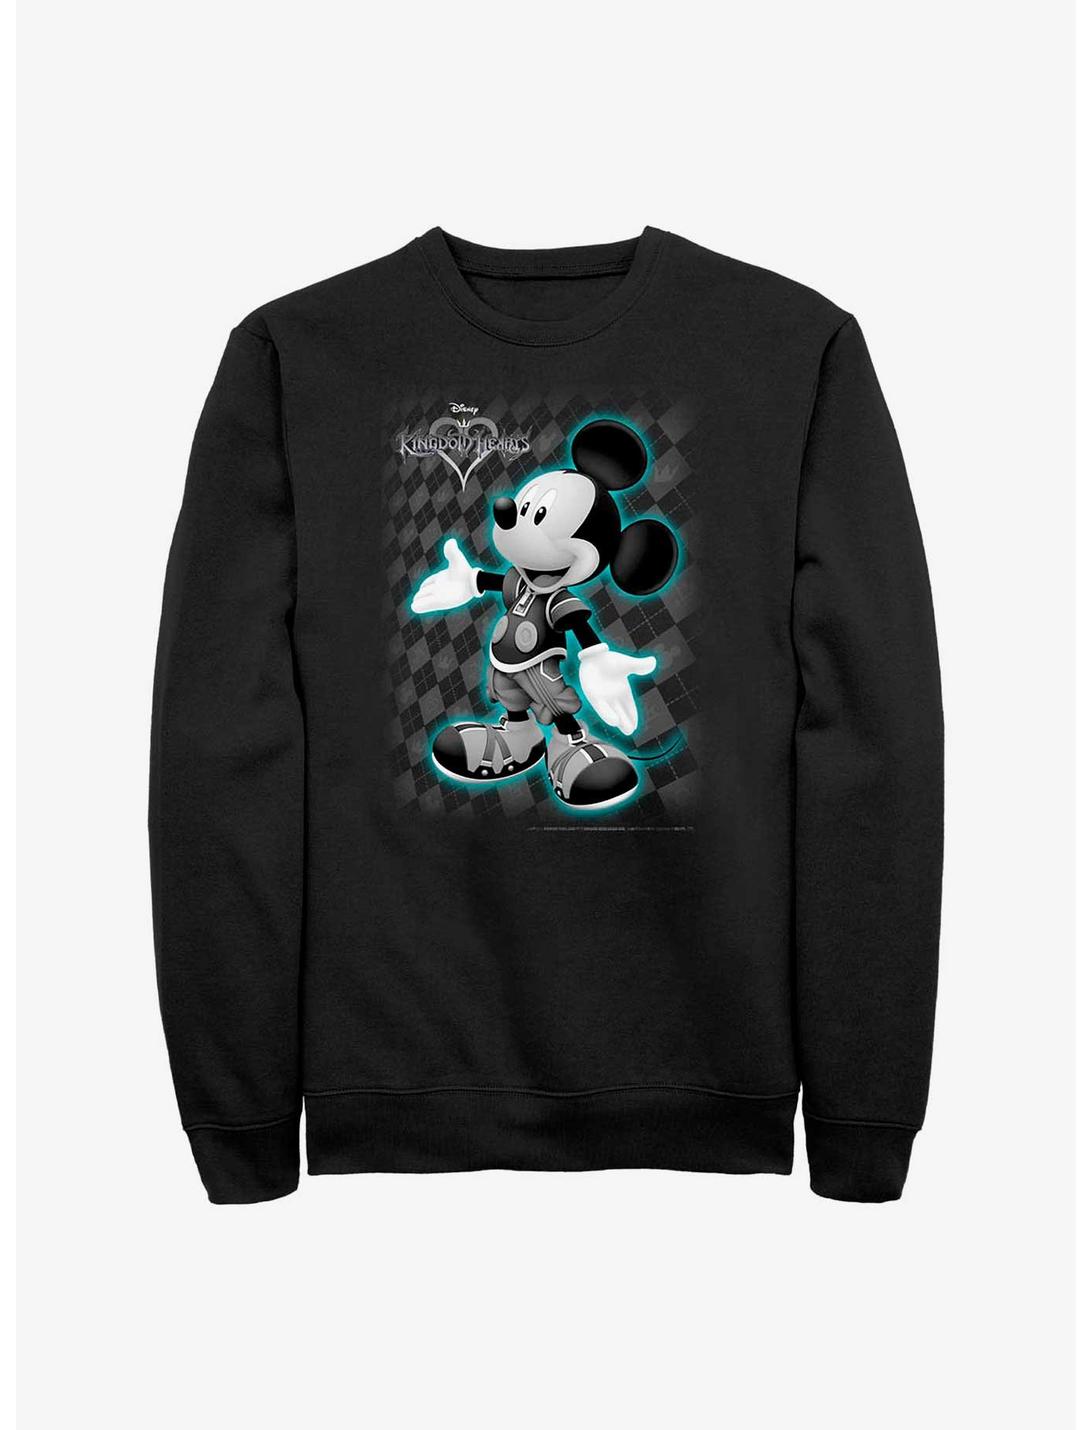 Disney Kingdom Hearts Mickey Pose Crew Sweatshirt, BLACK, hi-res